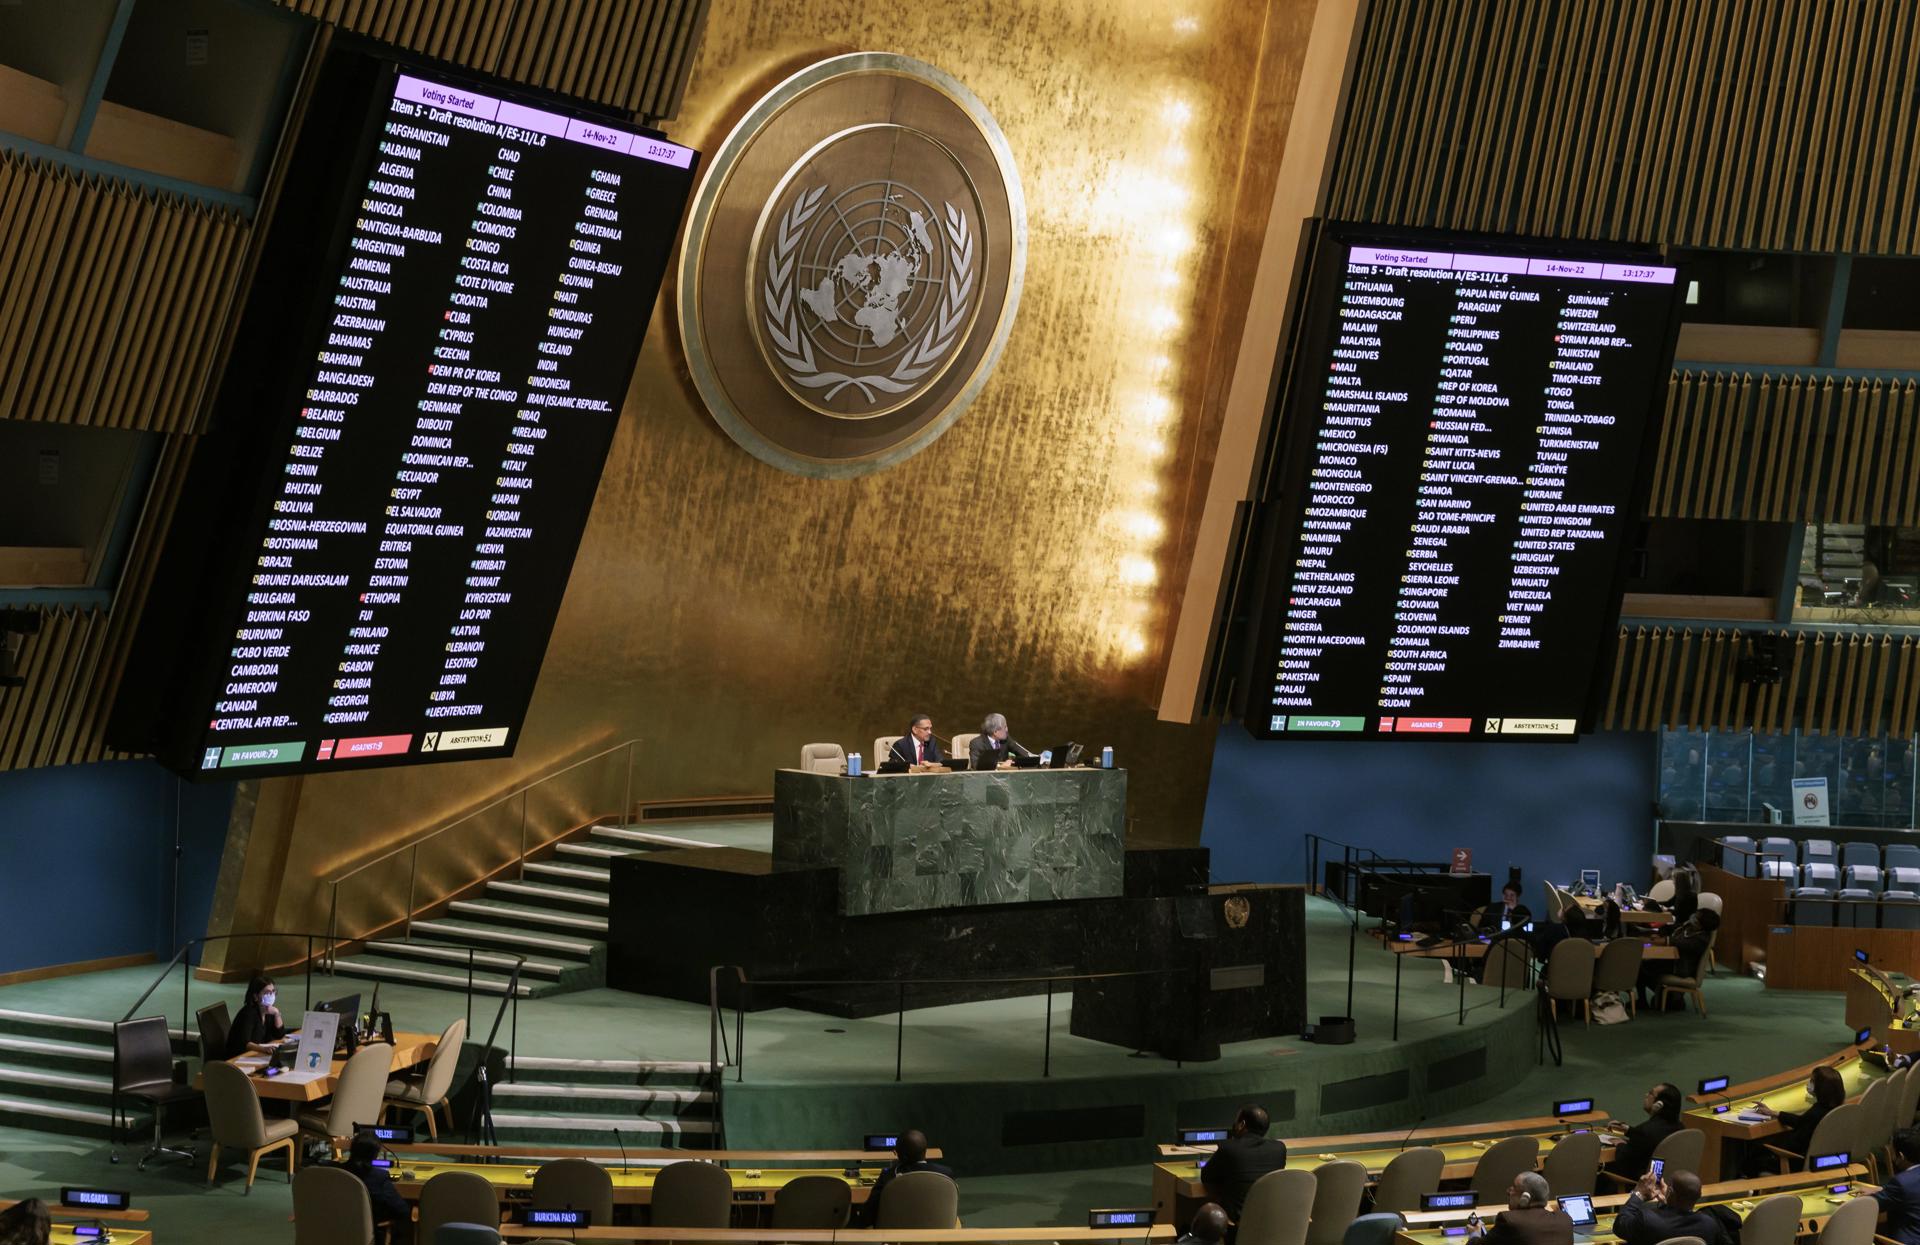 Una pantalla muestra los resultados de una votación en la Asamblea General de la ONU, en una fotografía de archivo. EFE/Justin Lane